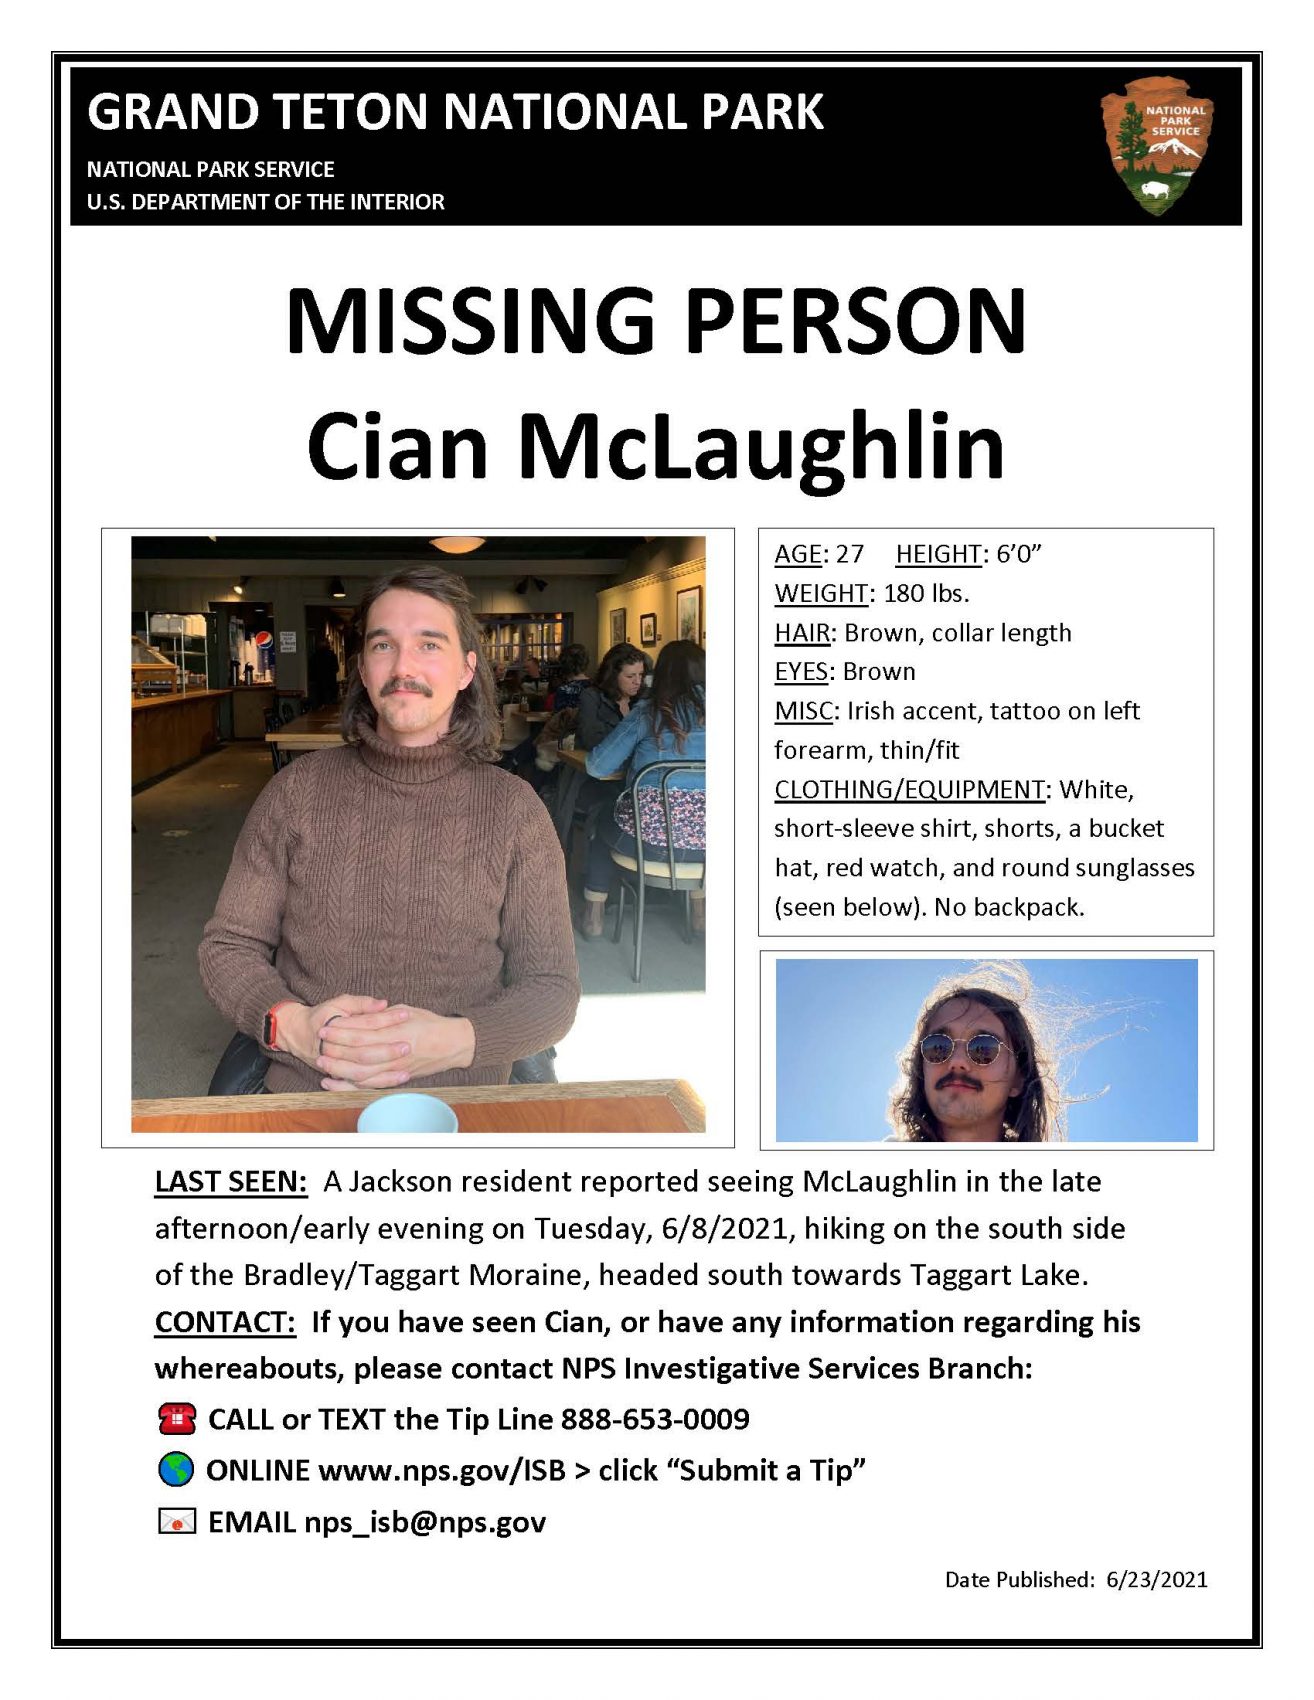 hiker, missing, Cian mclaughlin